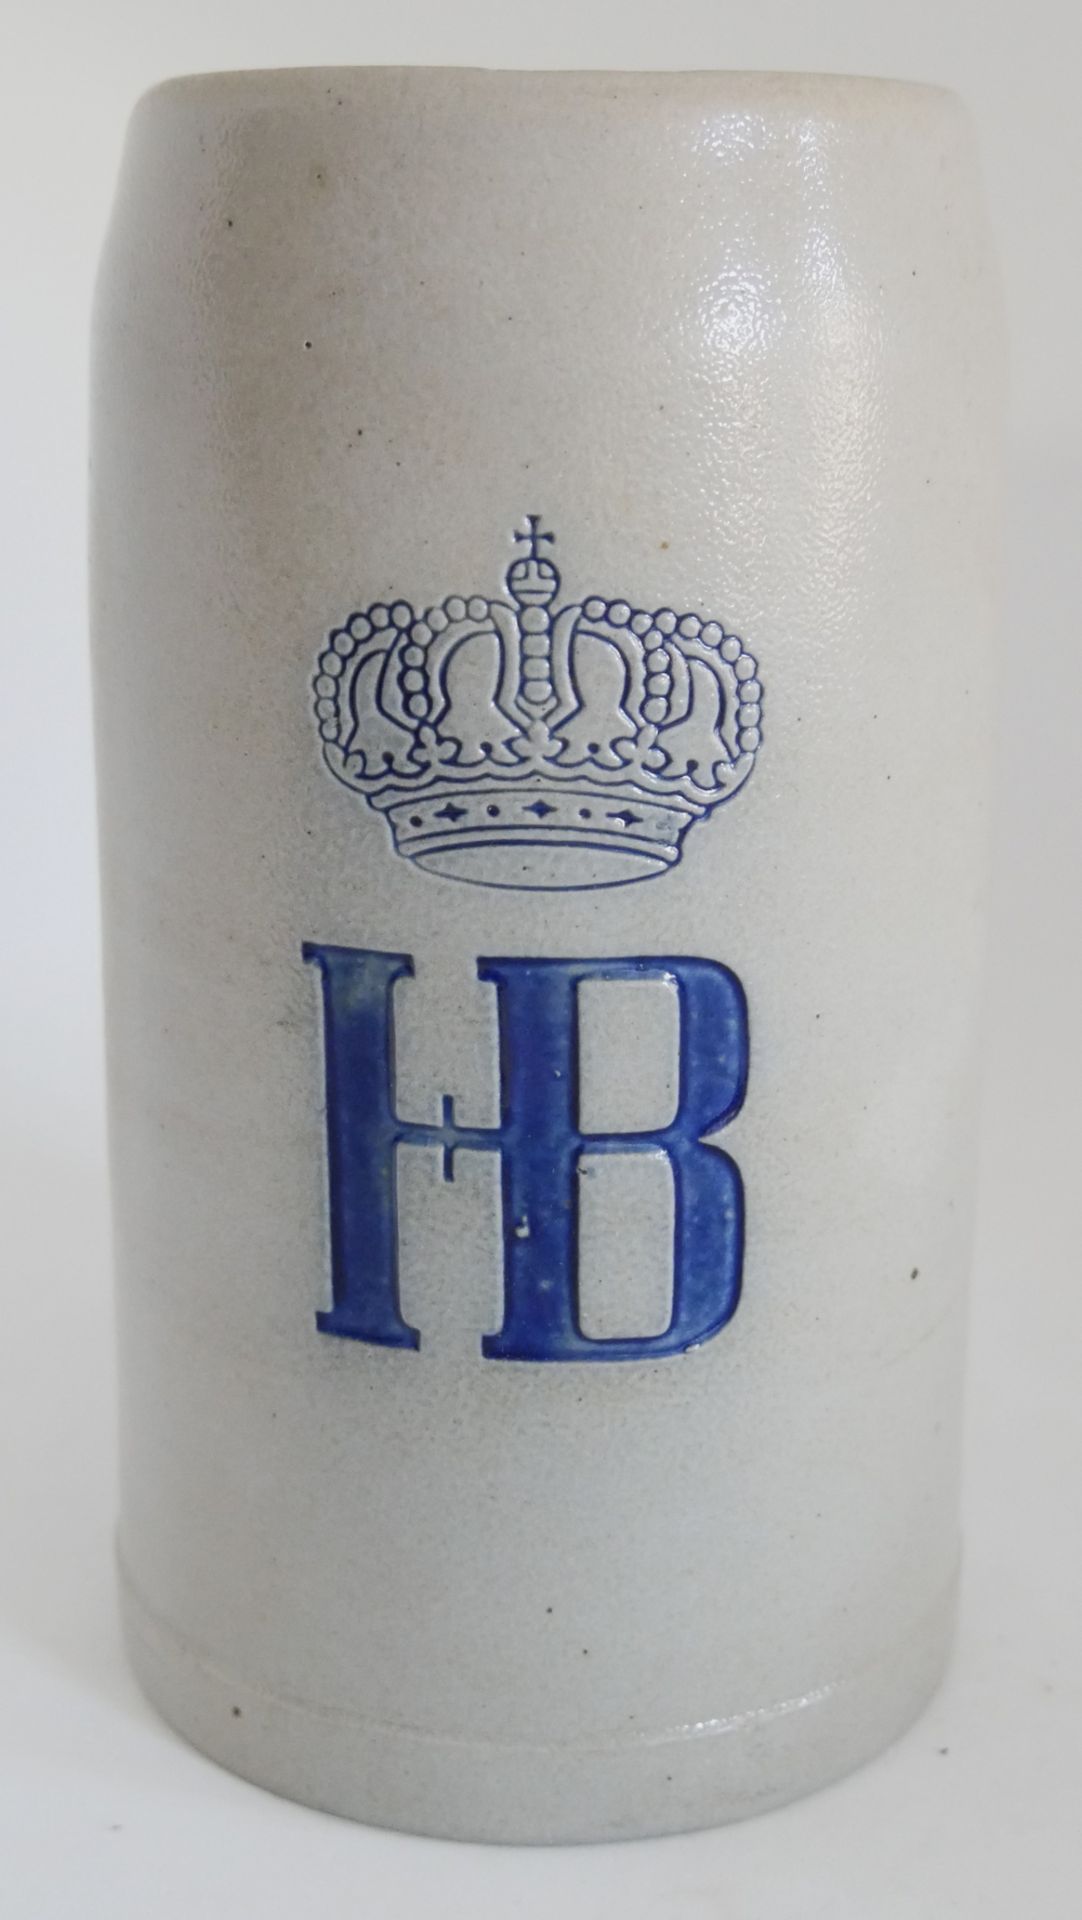 Keramik Bierkrug "HB". Höhe ca. 18 cm